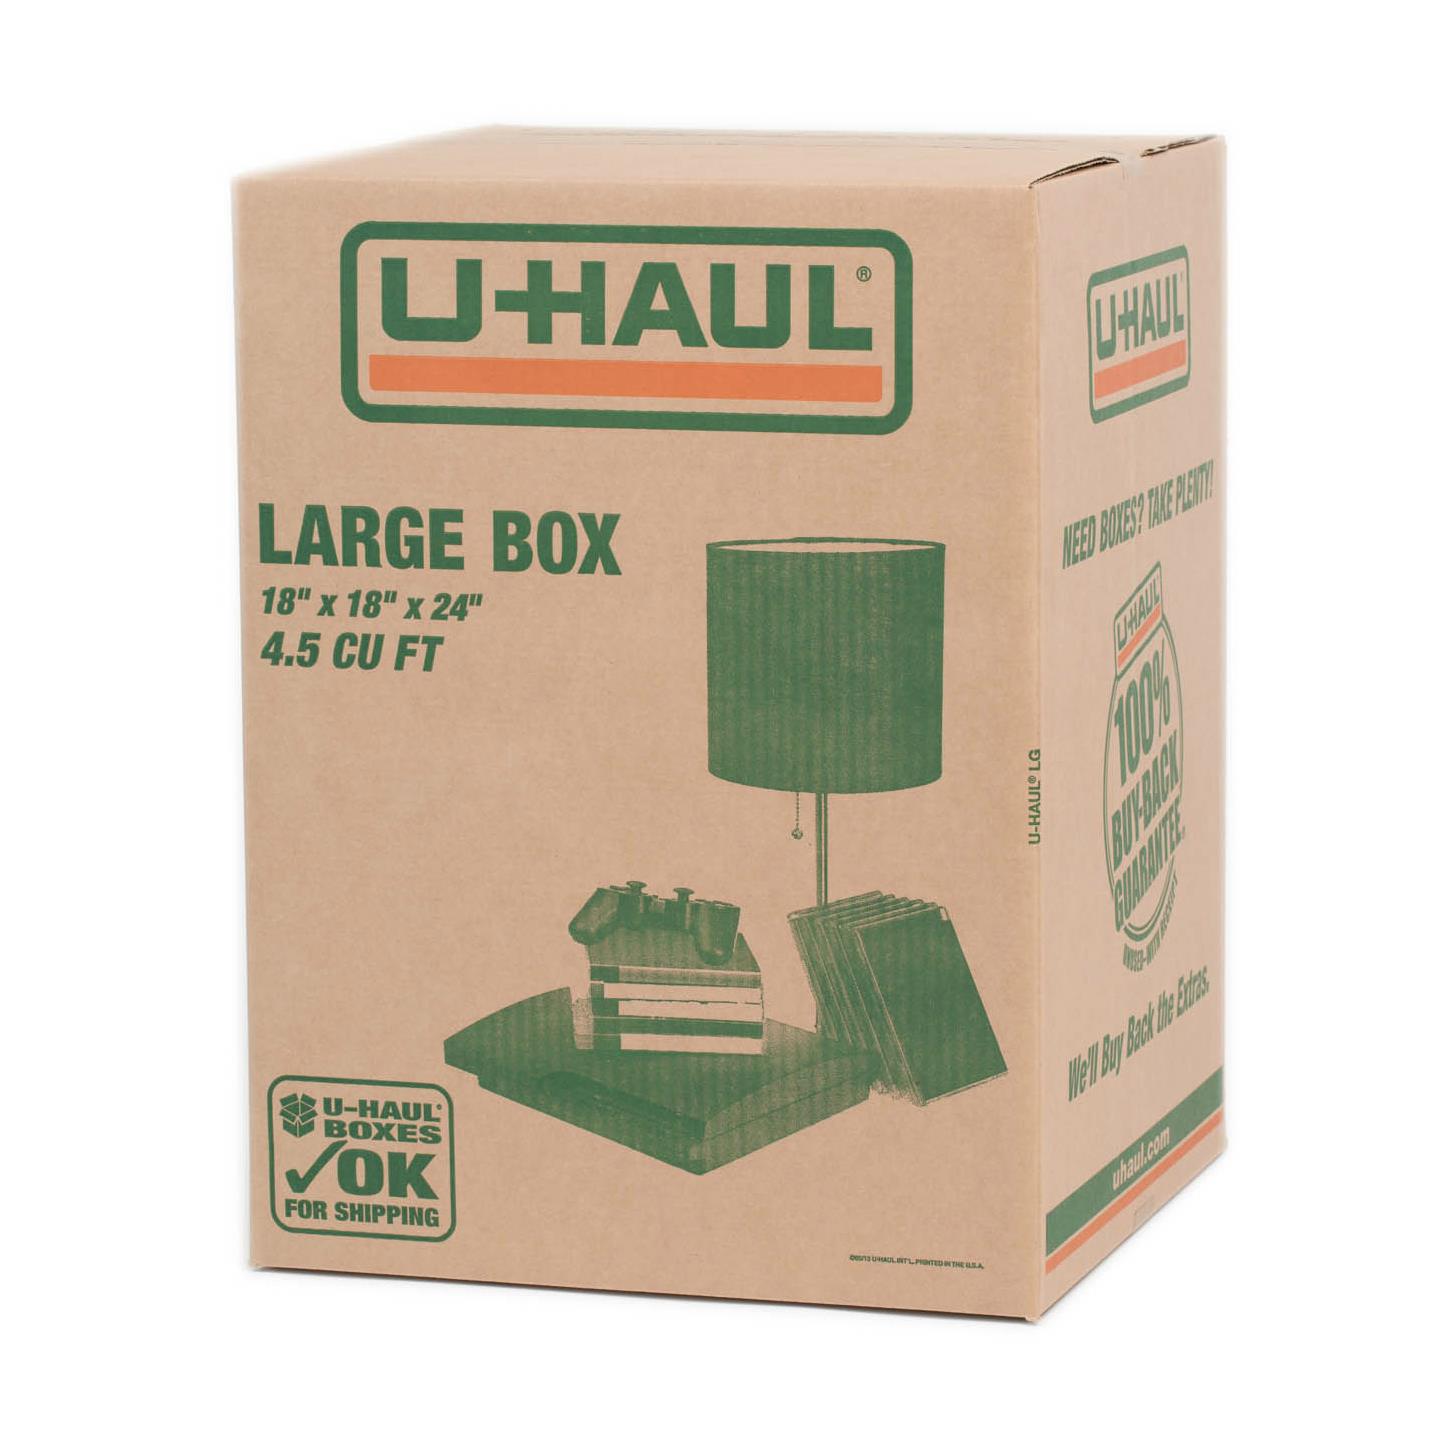 U-Haul: Large Moving Box